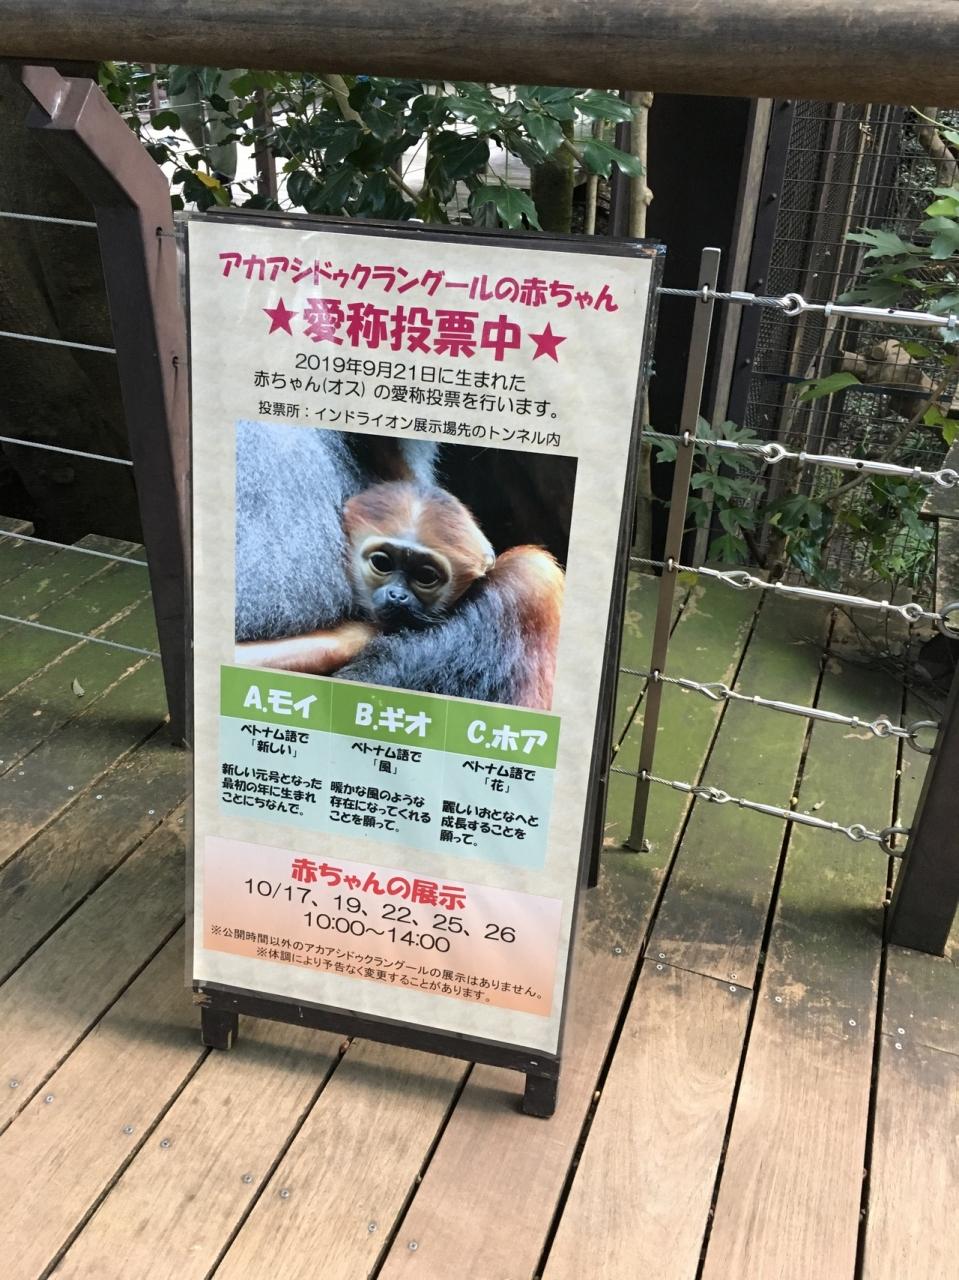 珍しい動物いっぱい 横浜ズーラシア動物園へ 神奈川県の旅行記 ブログ By ぐりぐらさん フォートラベル